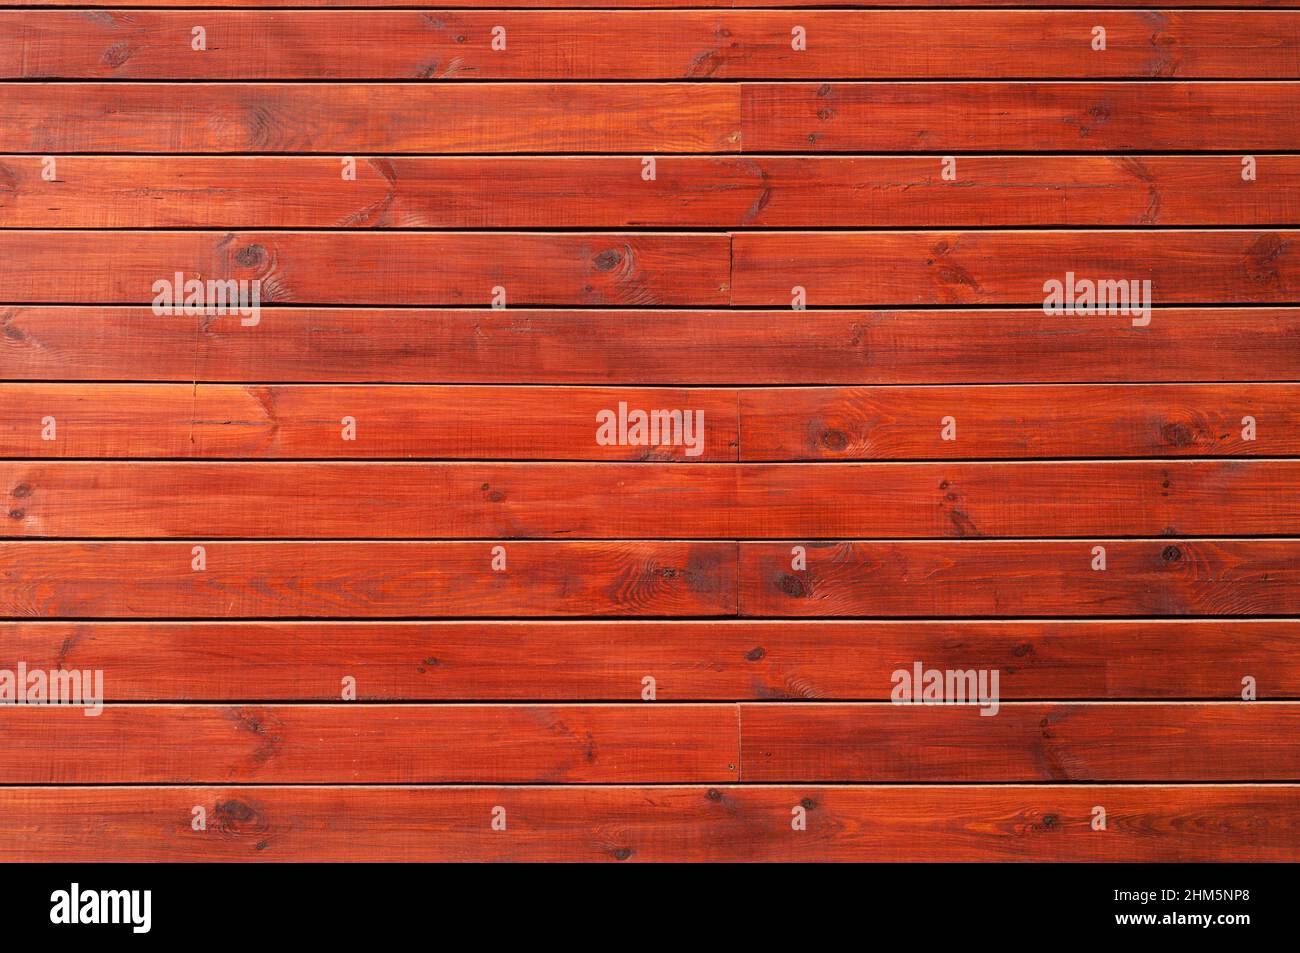 Cómo pintar una pared de madera barnizada? - Pinturas Juliá